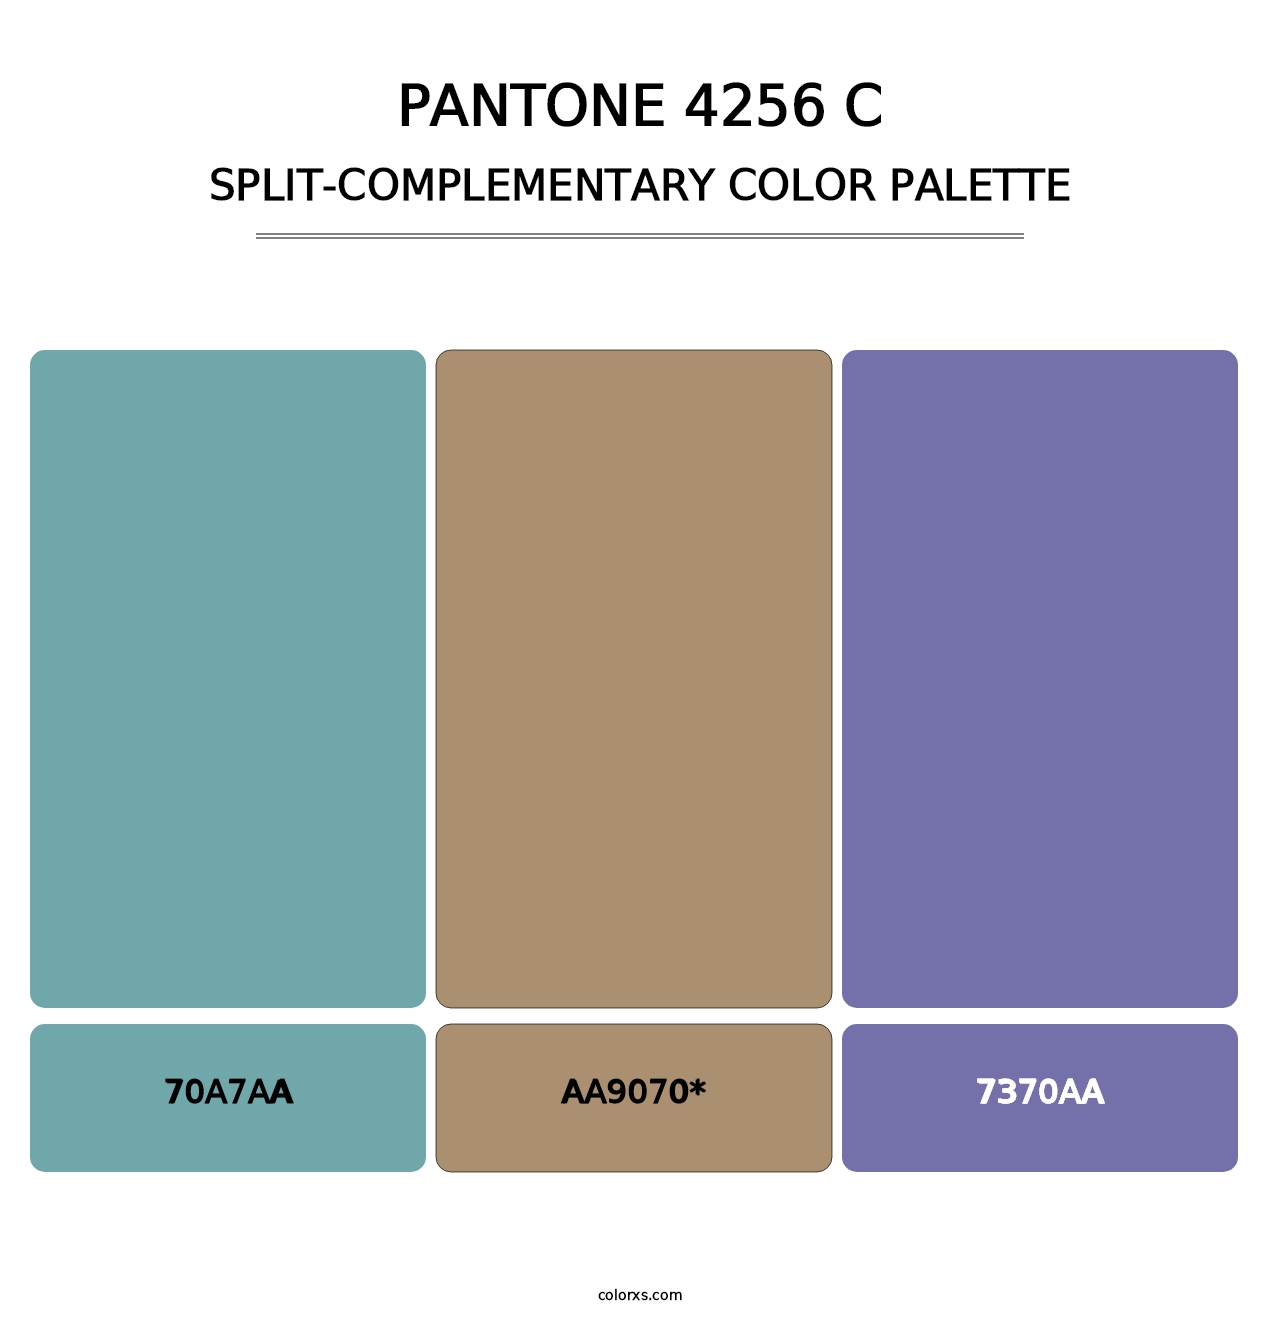 PANTONE 4256 C - Split-Complementary Color Palette